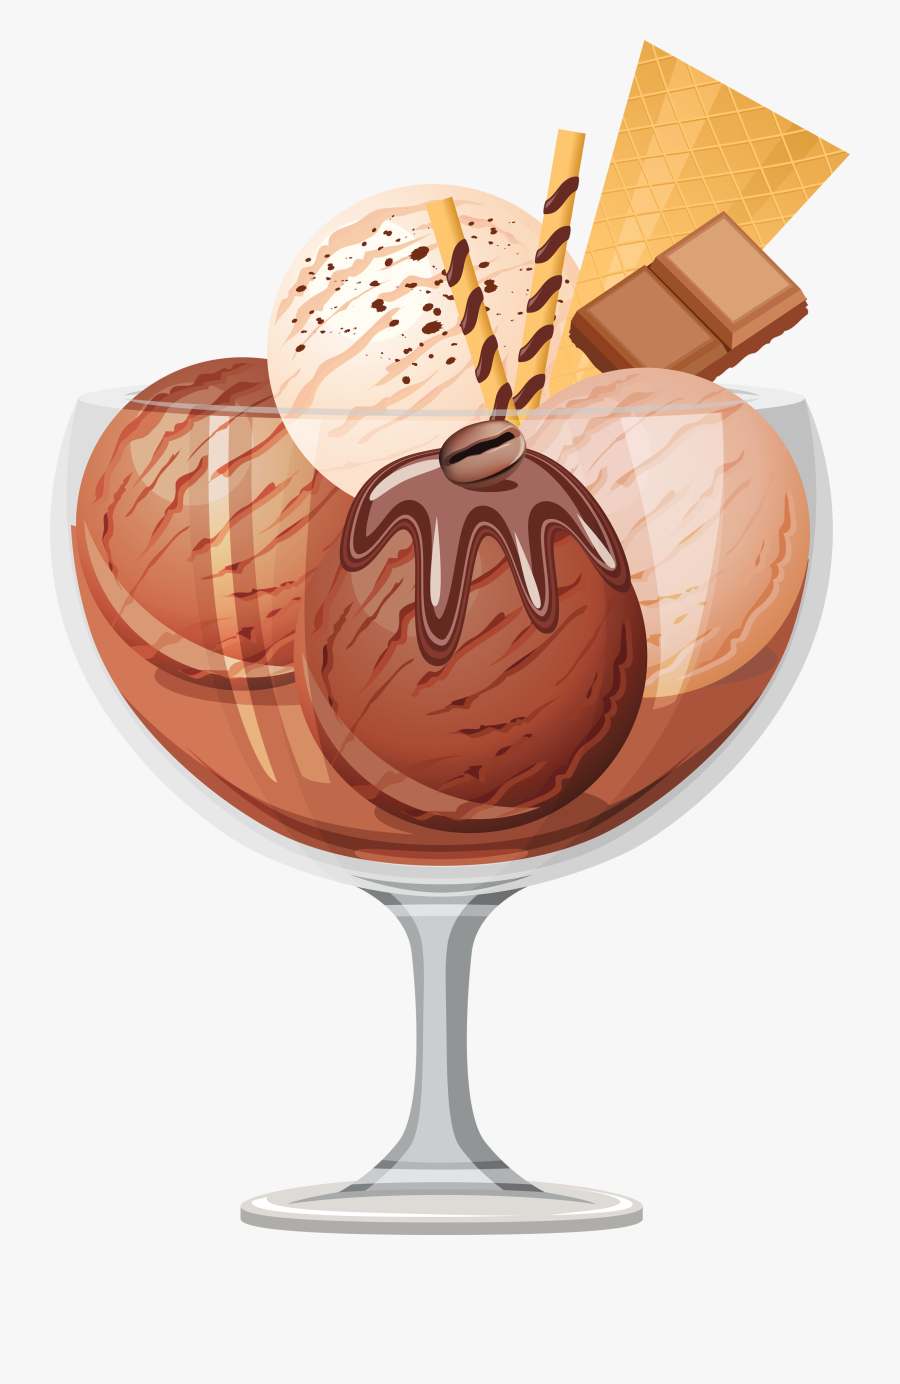 Chocolate Clip Art - Ice Cream Sundae Transparent Background, Transparent Clipart